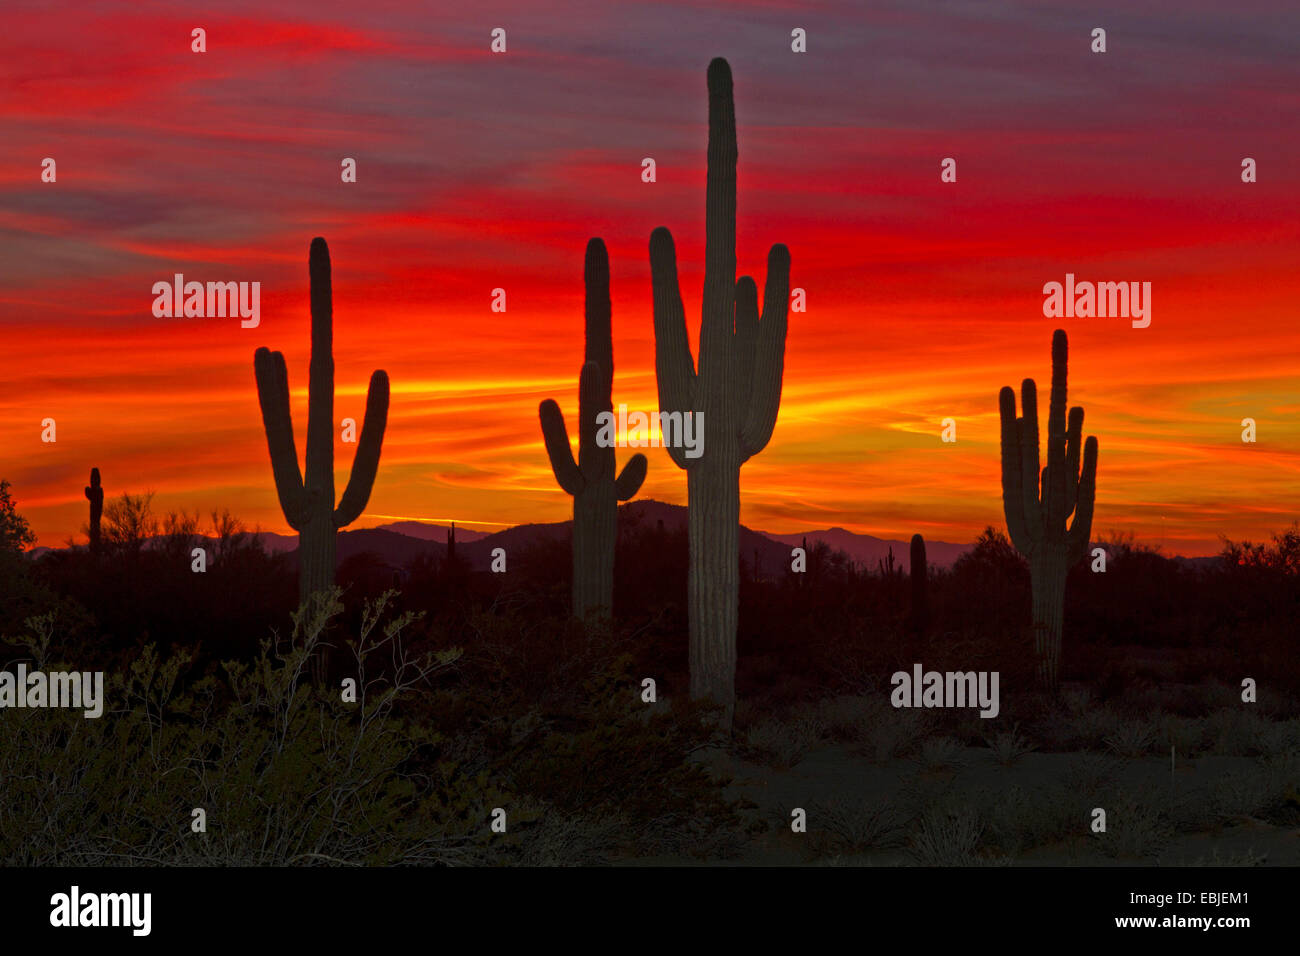 saguaro cactus (Carnegiea gigantea, Cereus giganteus), large individuals at sunset, USA, Arizona, Phoenix Stock Photo